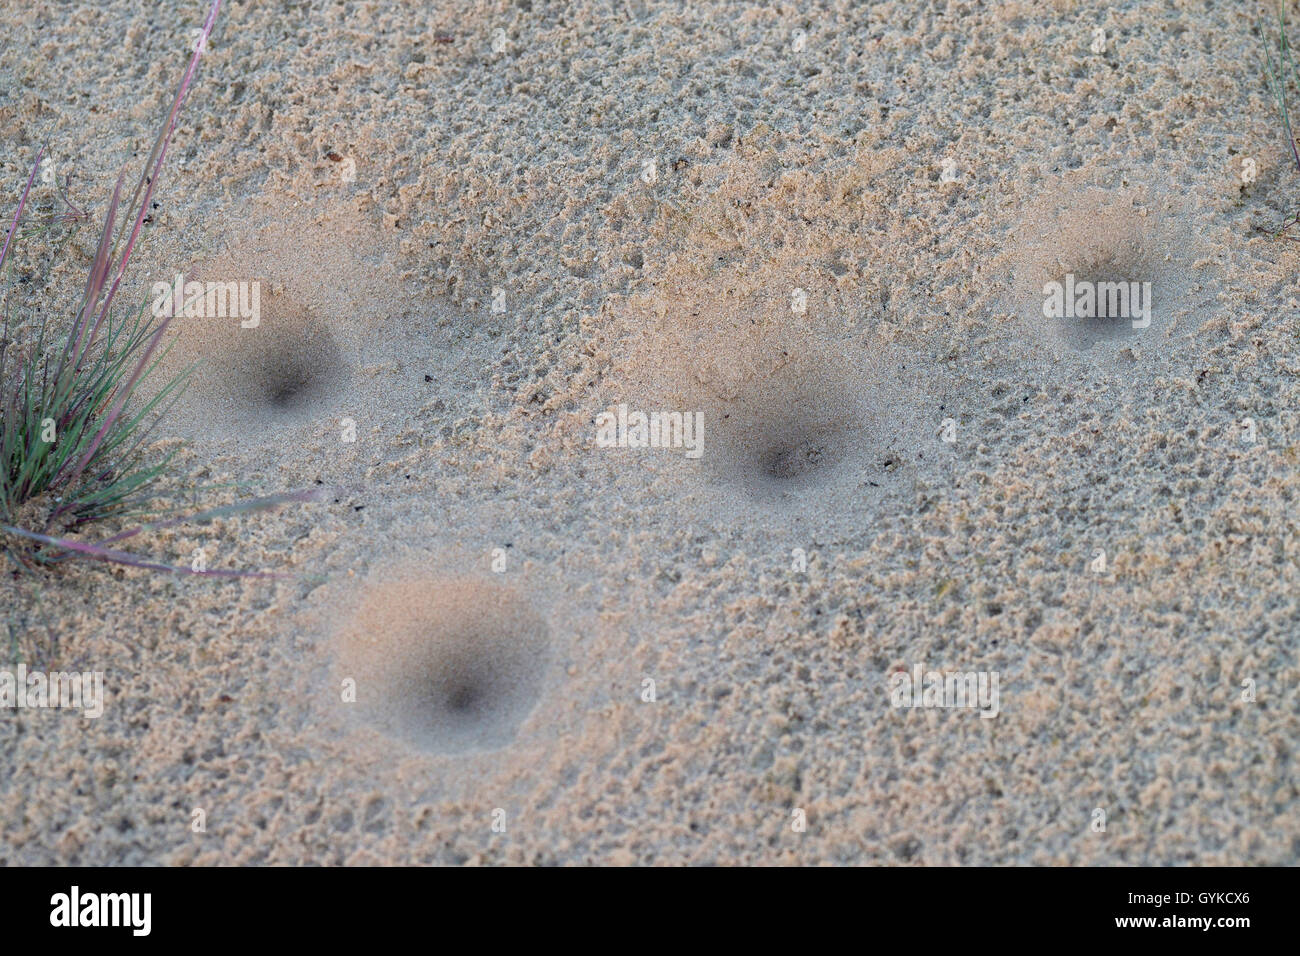 Antlion (Euroleon spec.), de puits dans le sable d'une dune à l'intérieur des terres, de l'Allemagne Banque D'Images